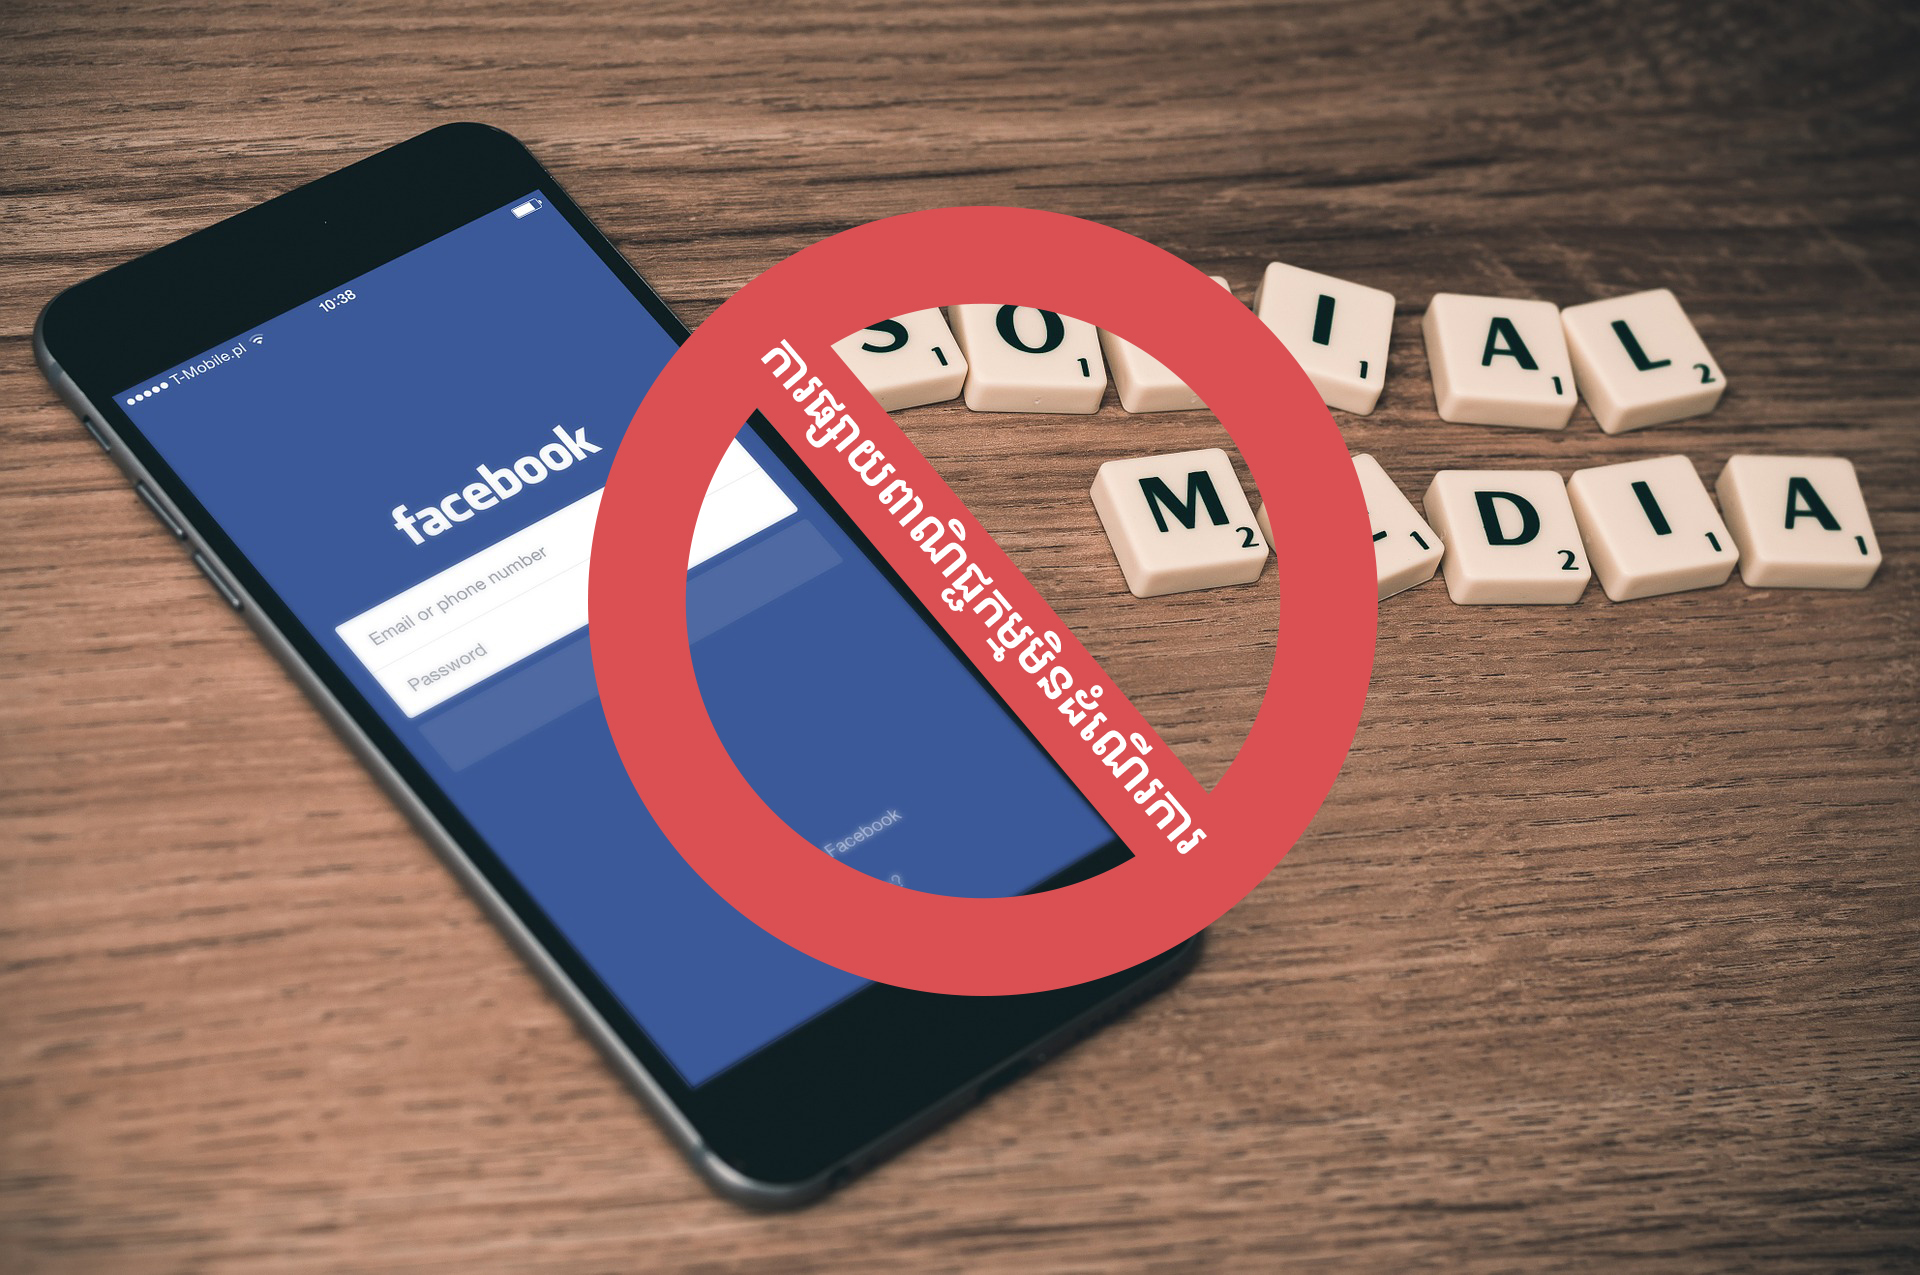 គណនី Facebook របស់អ្នកត្រូវបាន Restricted មែនទេ? ដំណោះស្រាយទាំងនេះអាចជួយអ្នកបាន